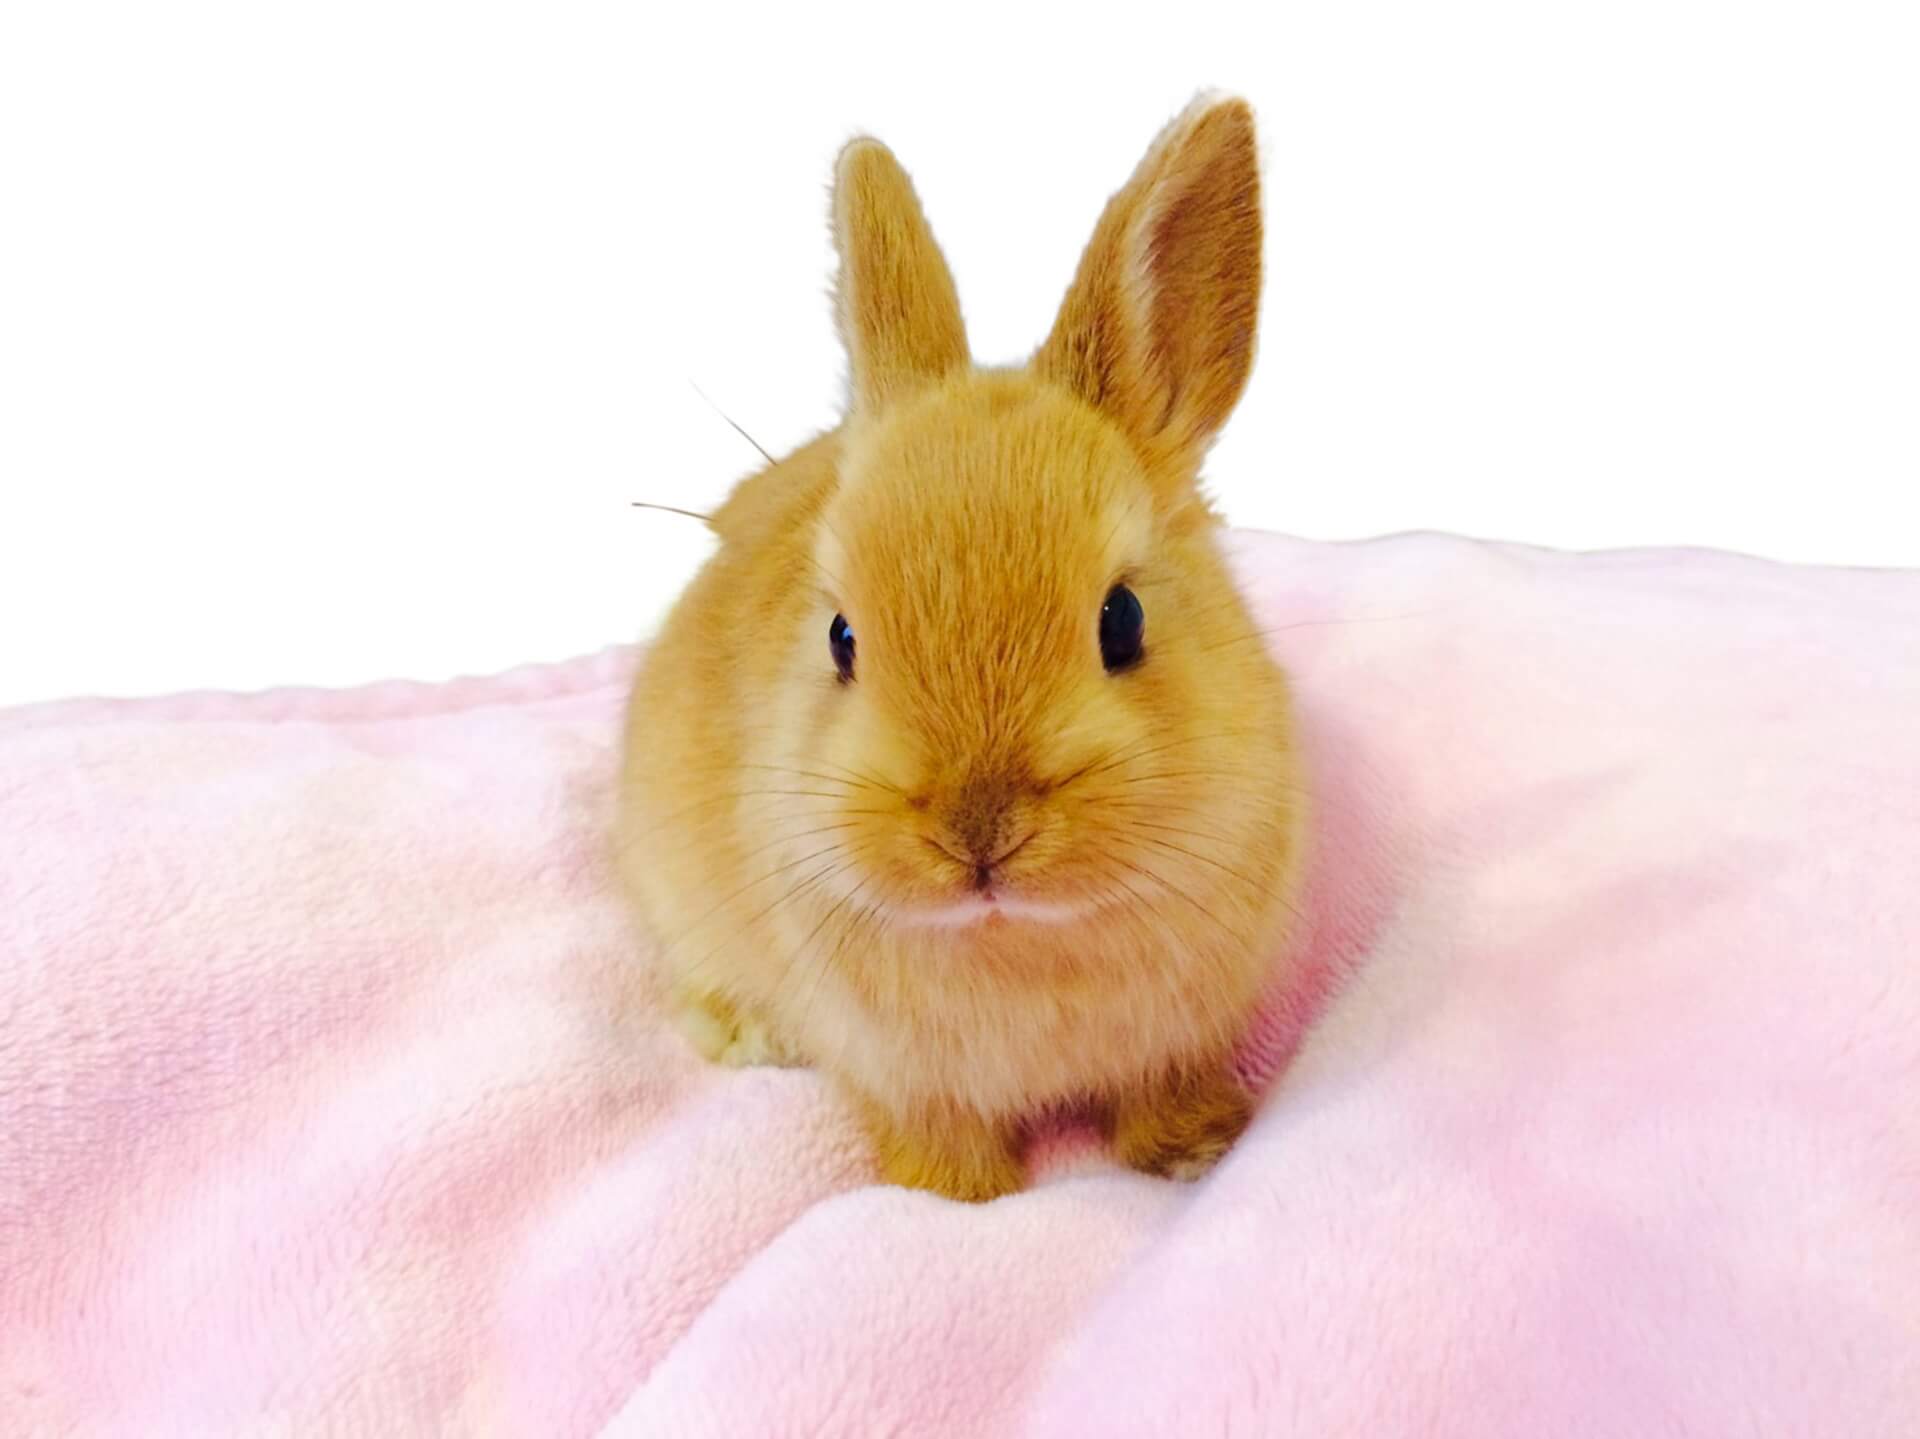 ウサギは食べ物で尿の色が変化 尿検査で見るべきポイント 動物の医療と健康を考える情報サイト